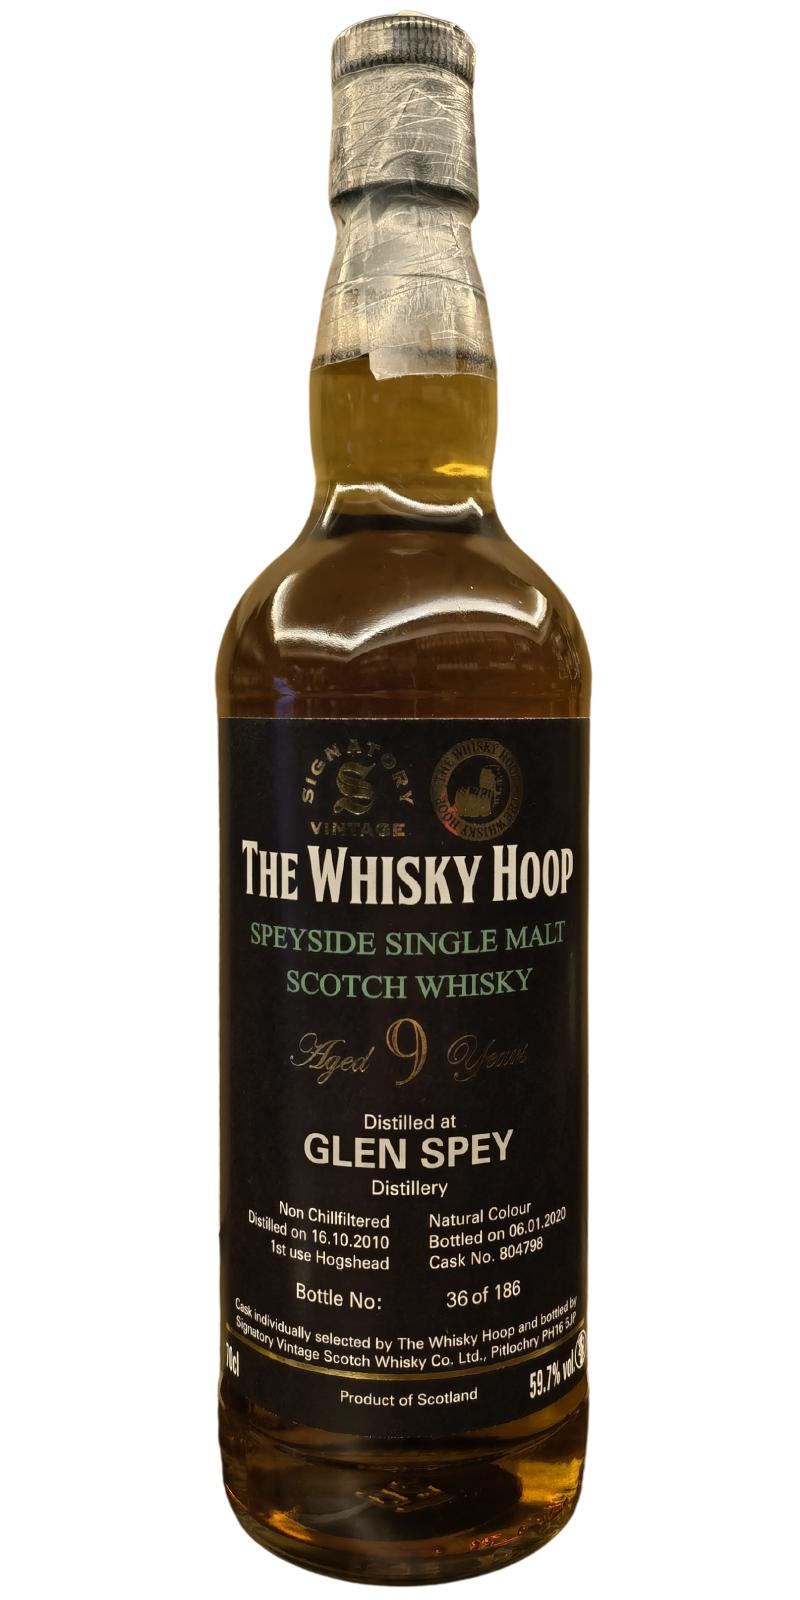 Glen Spey 2010 SV #804798 The Whisky Hoop 59.7% 700ml